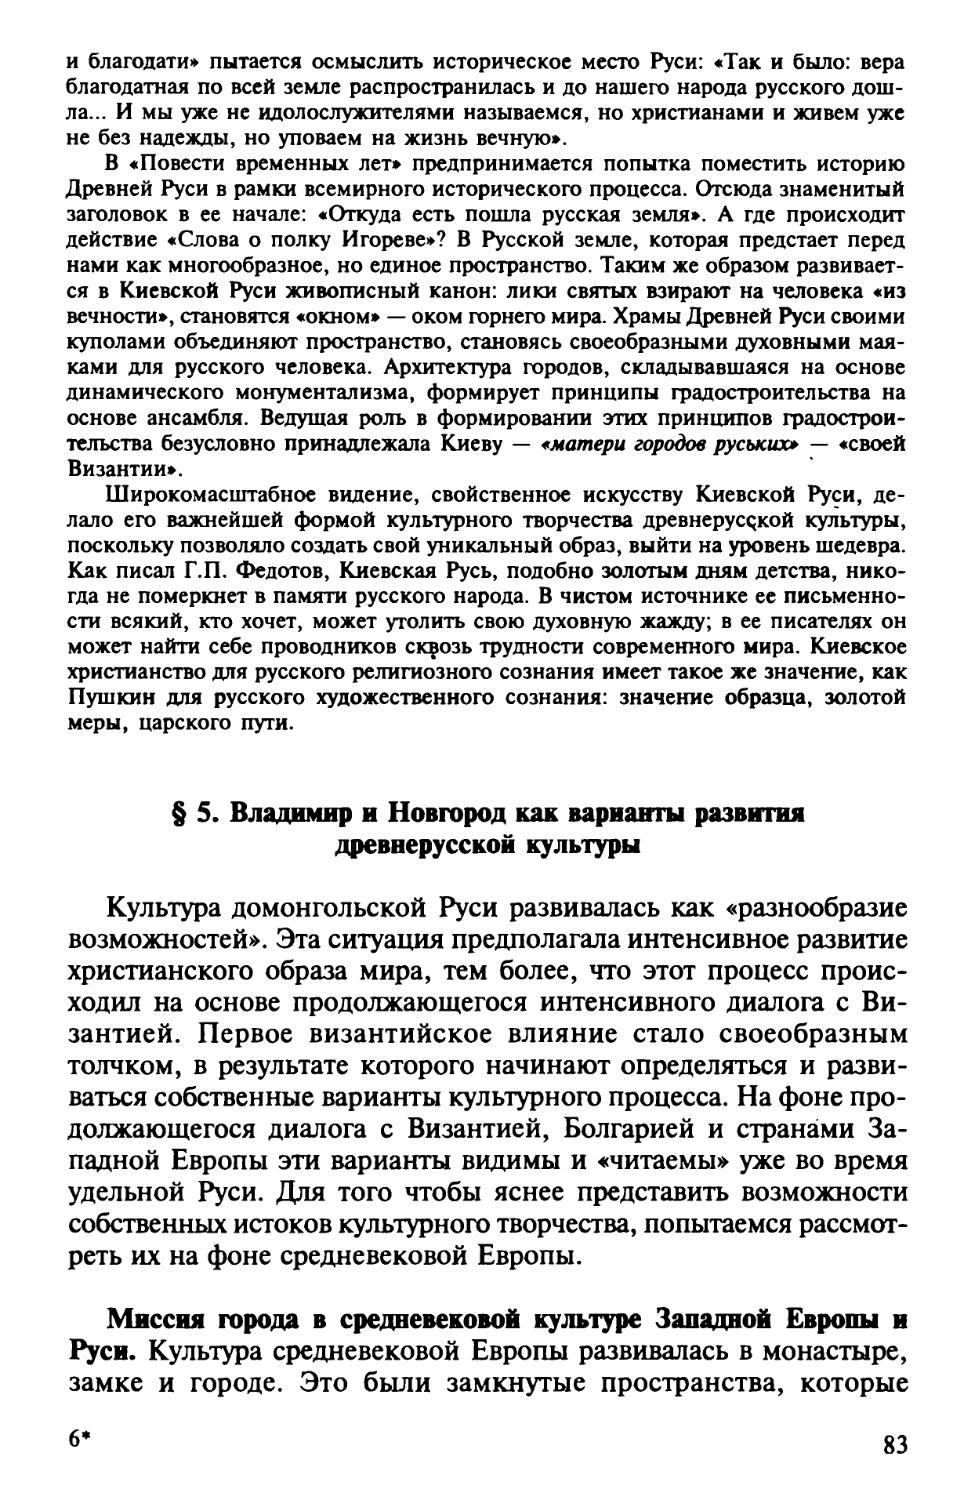 § 5. Владимир и Новгород как варианты развития древнерусской культуры